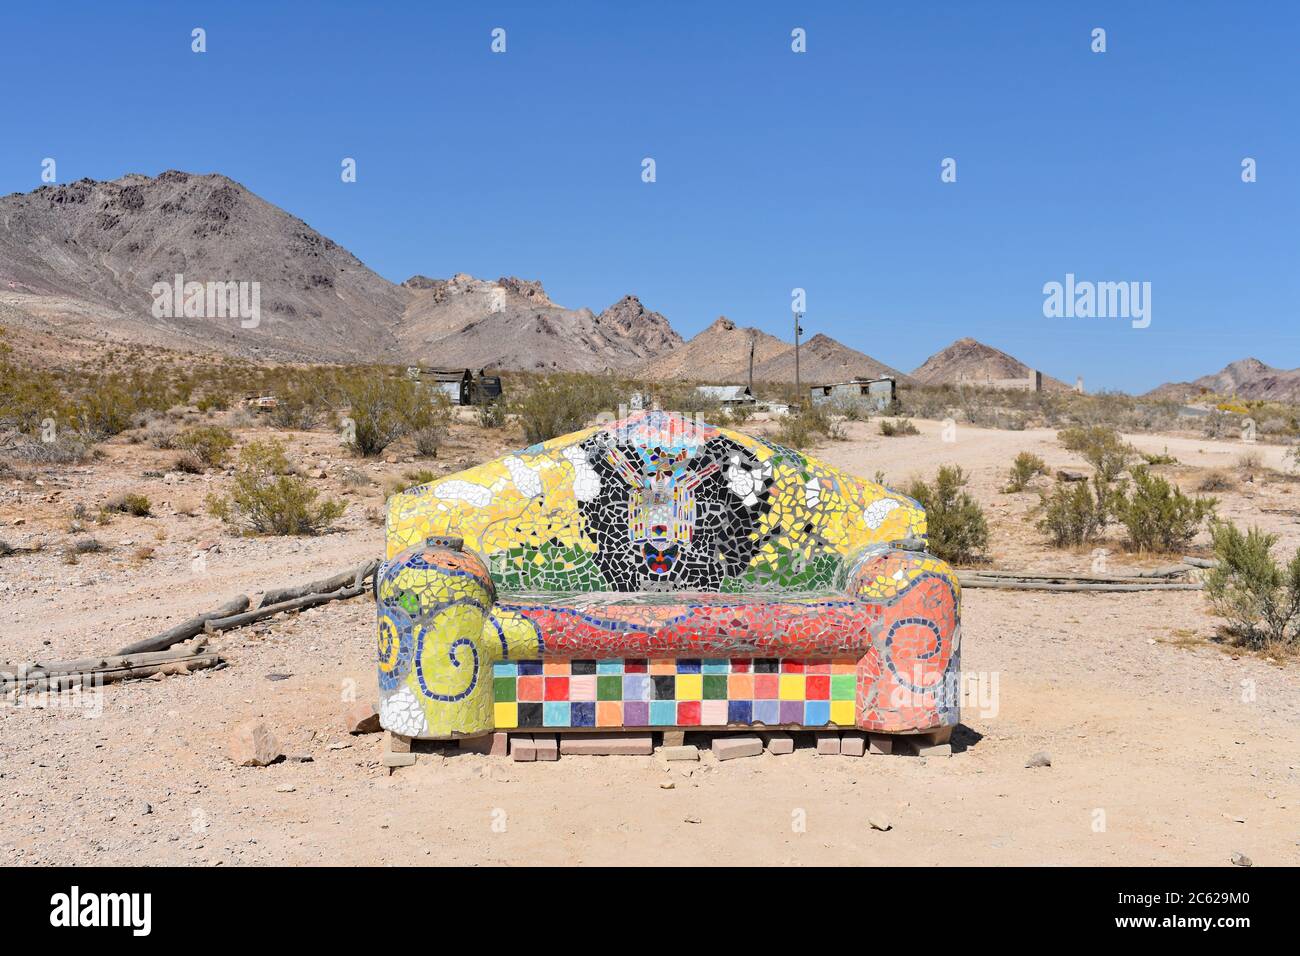 Siediti qui! Di Sofie Siegmann. Un colorato divano mosaico / divano nel deserto. GOLDWELL museo di scultura all'aperto, vicino alla Valle della morte, Nevada. Foto Stock